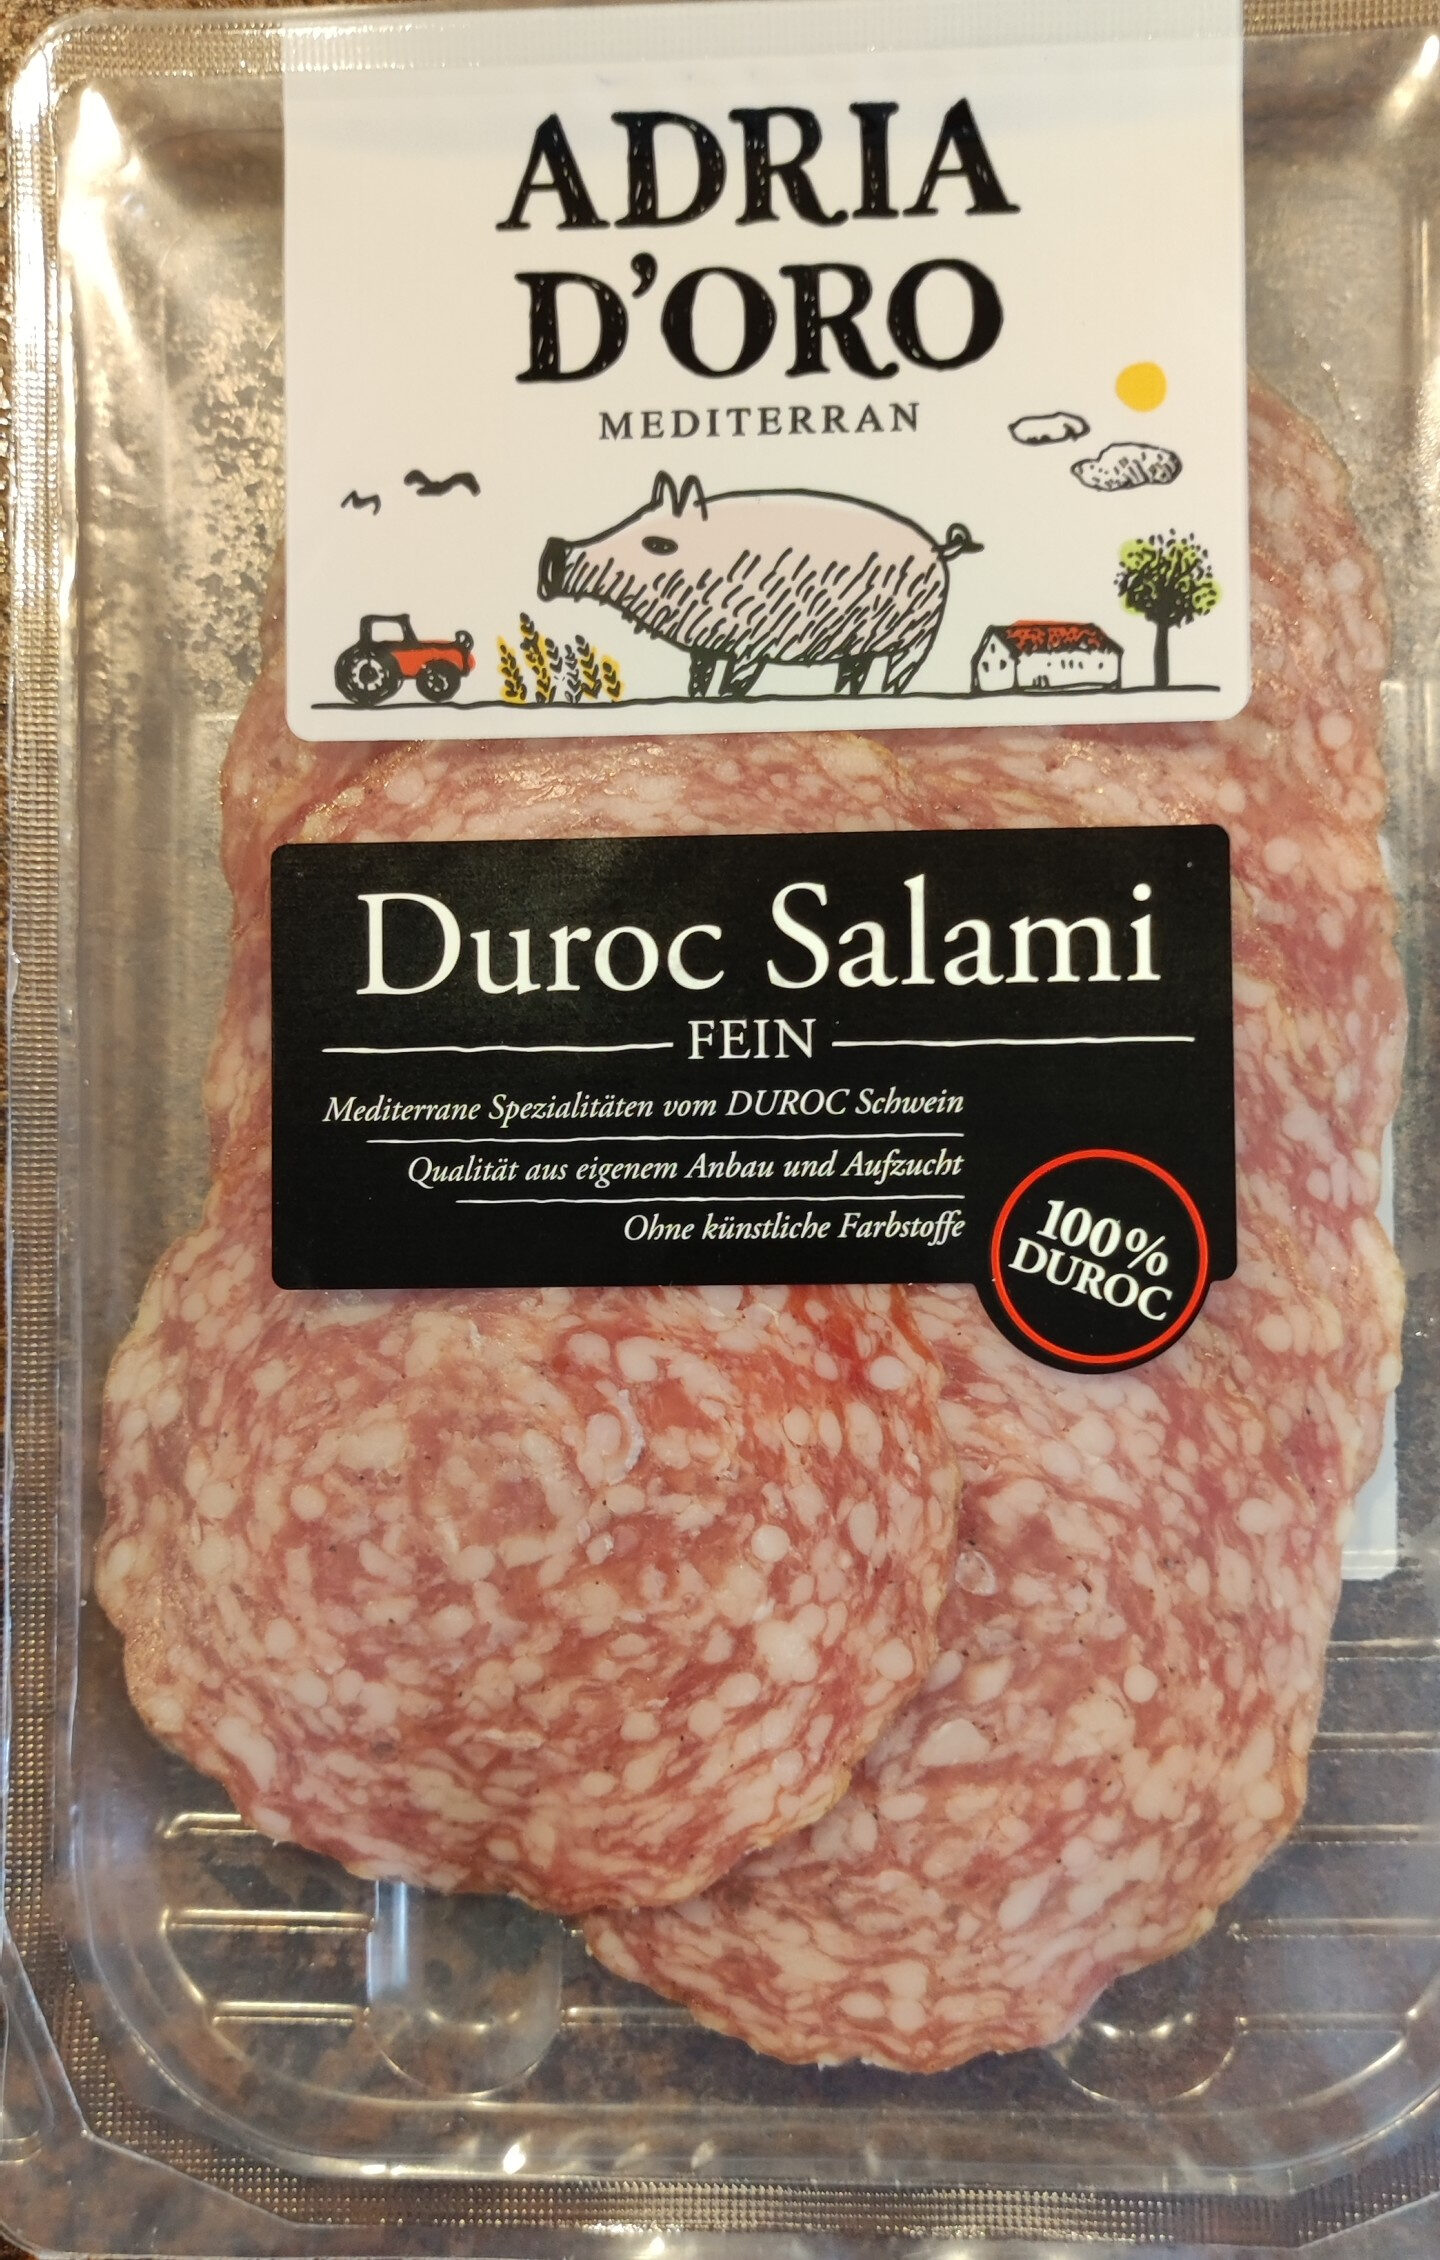 Duroc Salami - Product - de